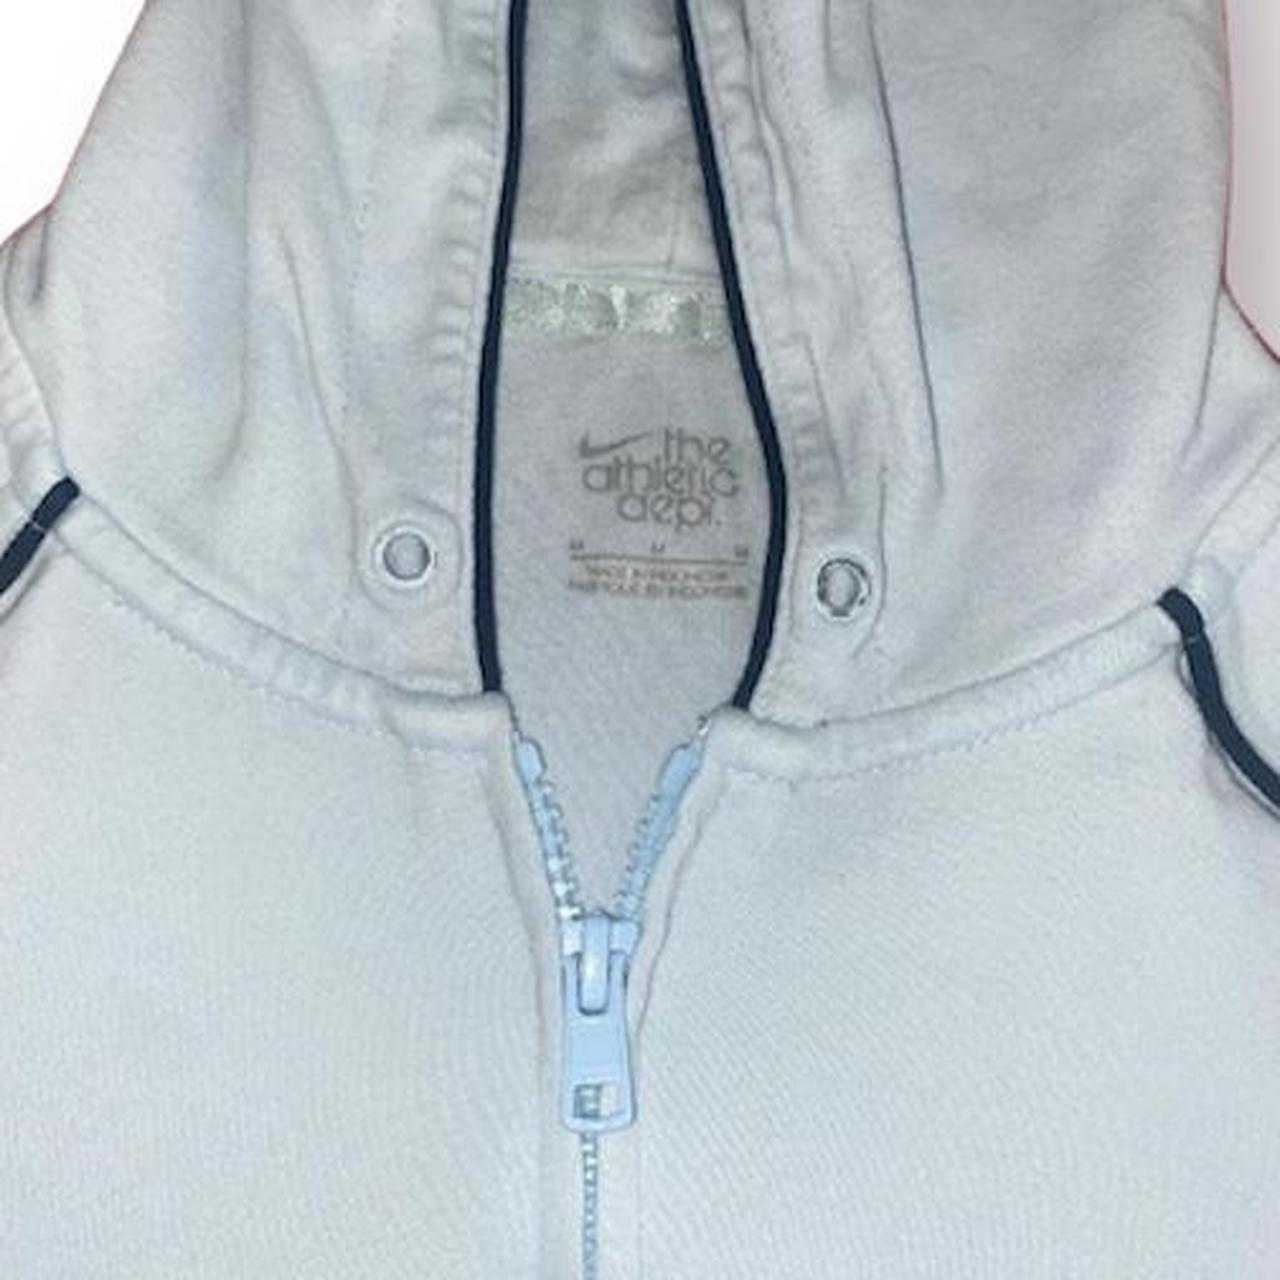 💙 vintage baby blue nike zip up hoodie in size... - Depop